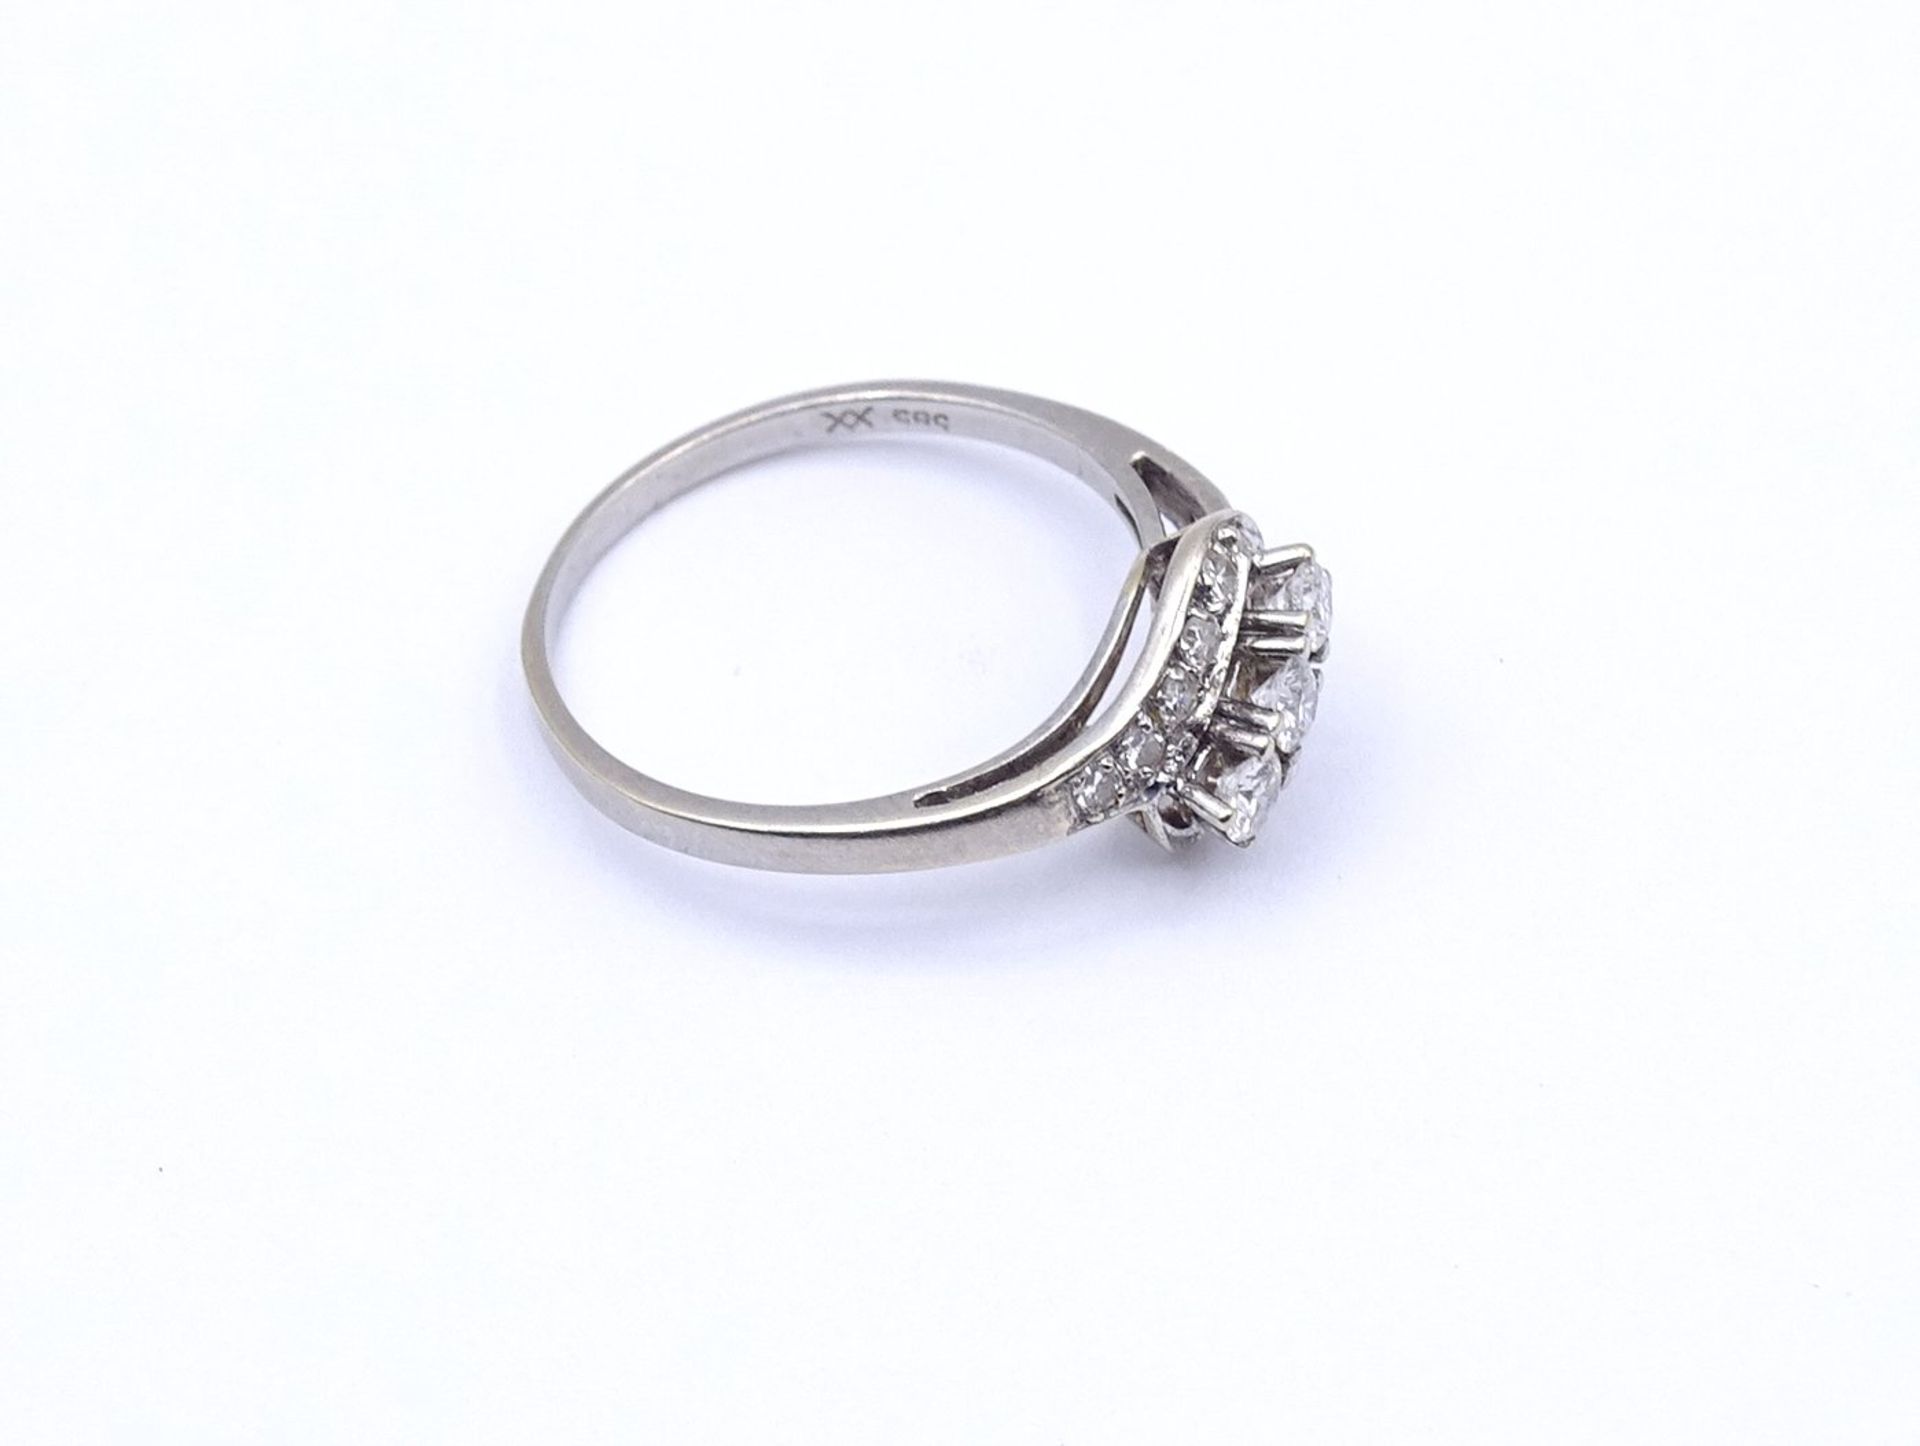 Brillant Ring WG 585/000 mit Brillanten zus. 0,50ct., 2,7g., RG 60 - Image 3 of 4